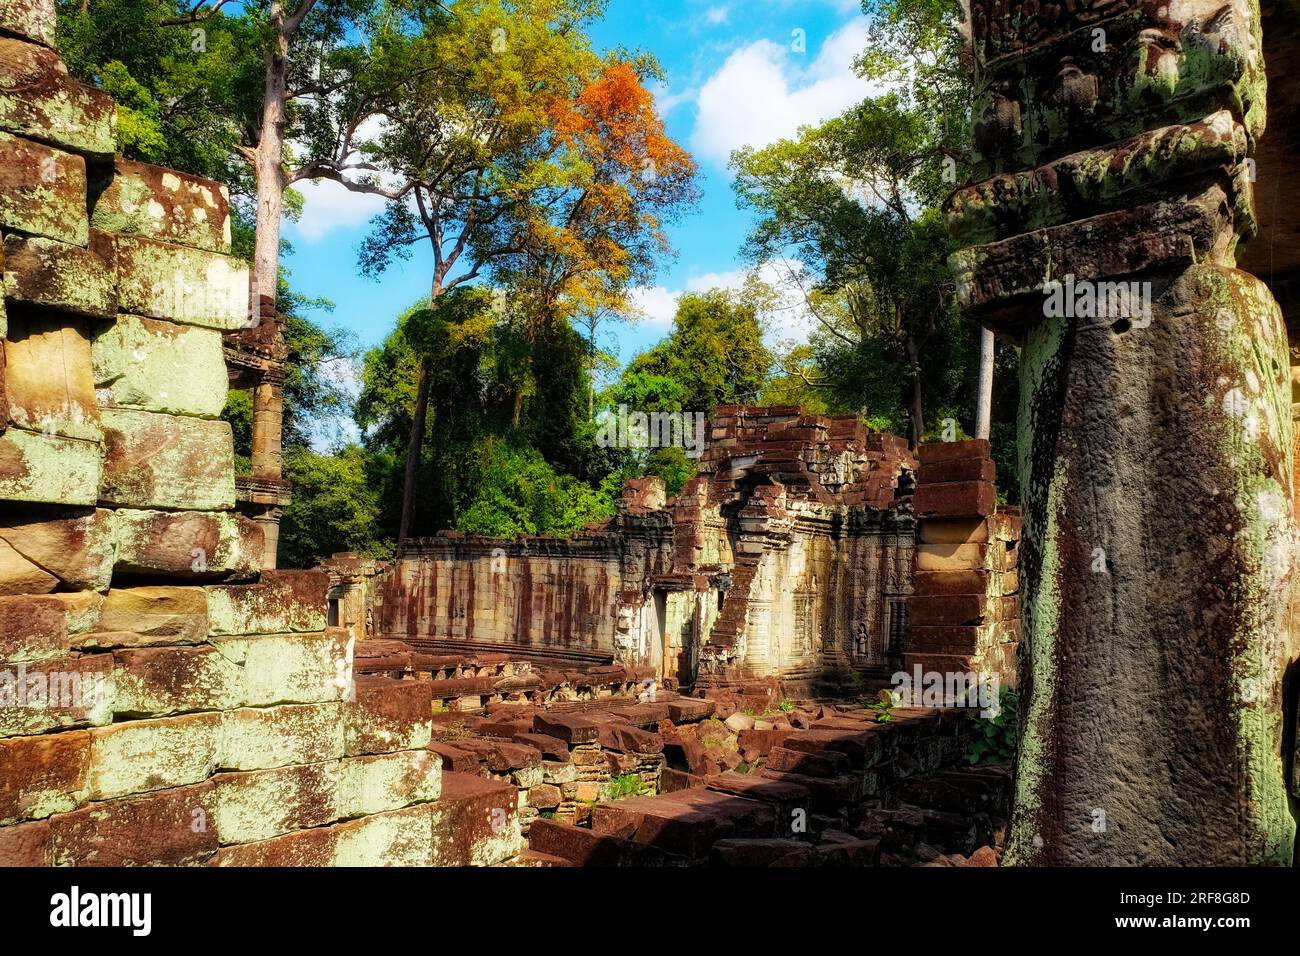 Rovine di antiche strutture nelle foreste cambogiane, la città perduta di Angkor. Foto Stock